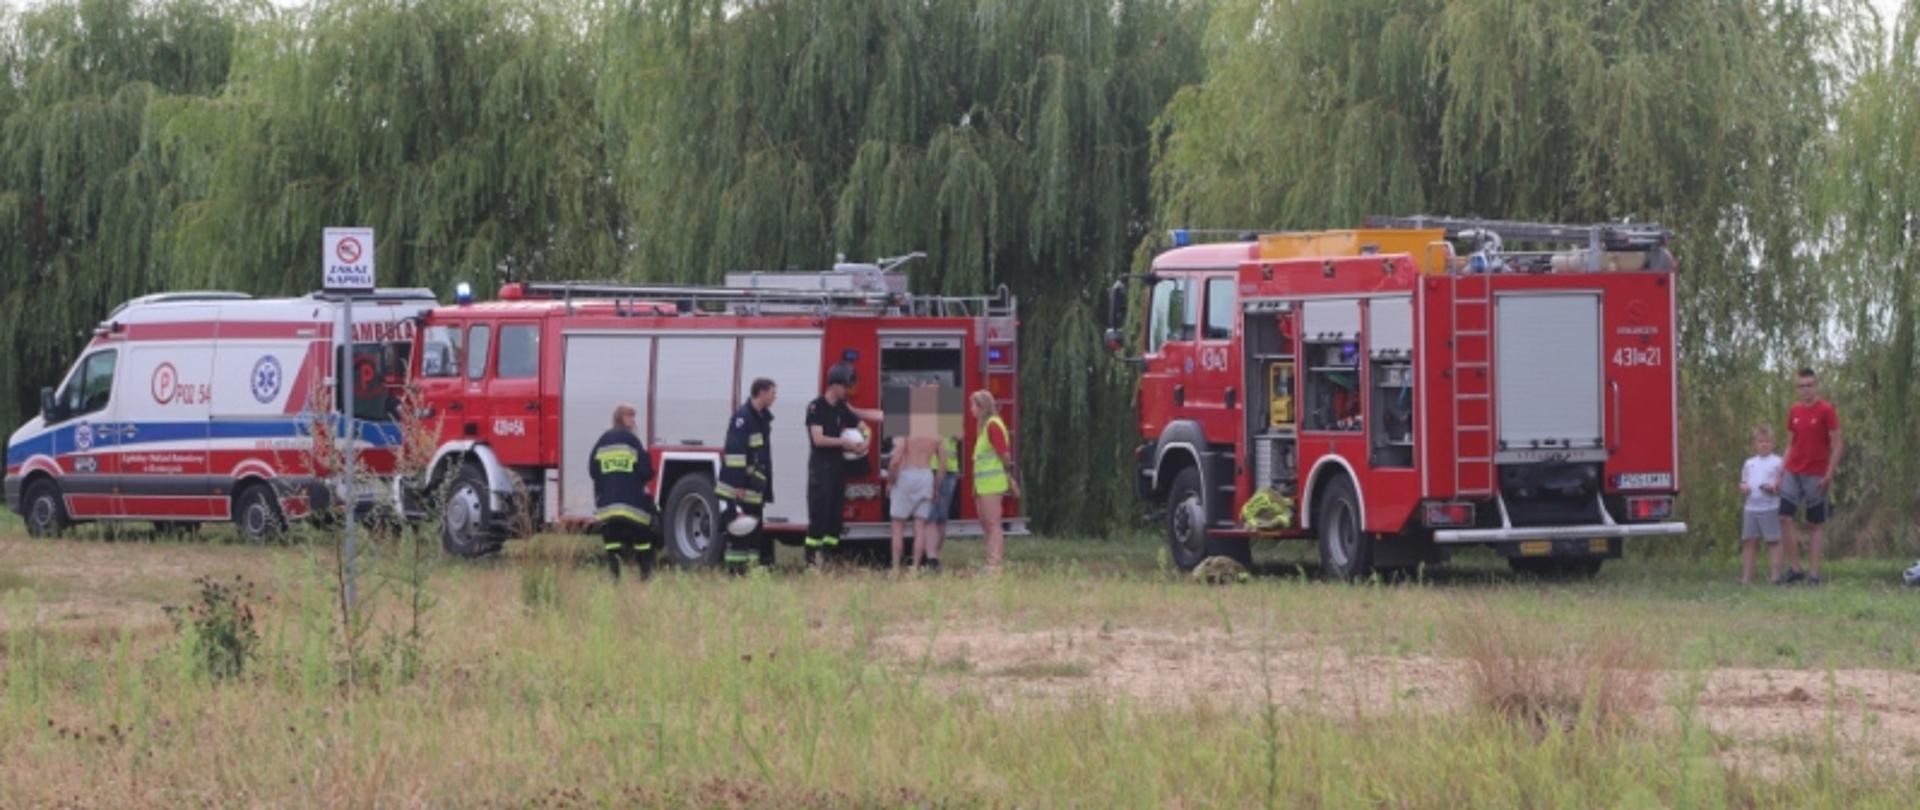 Na zdjęciu widać samochody pożarnicze oraz karetkę pogotowia.